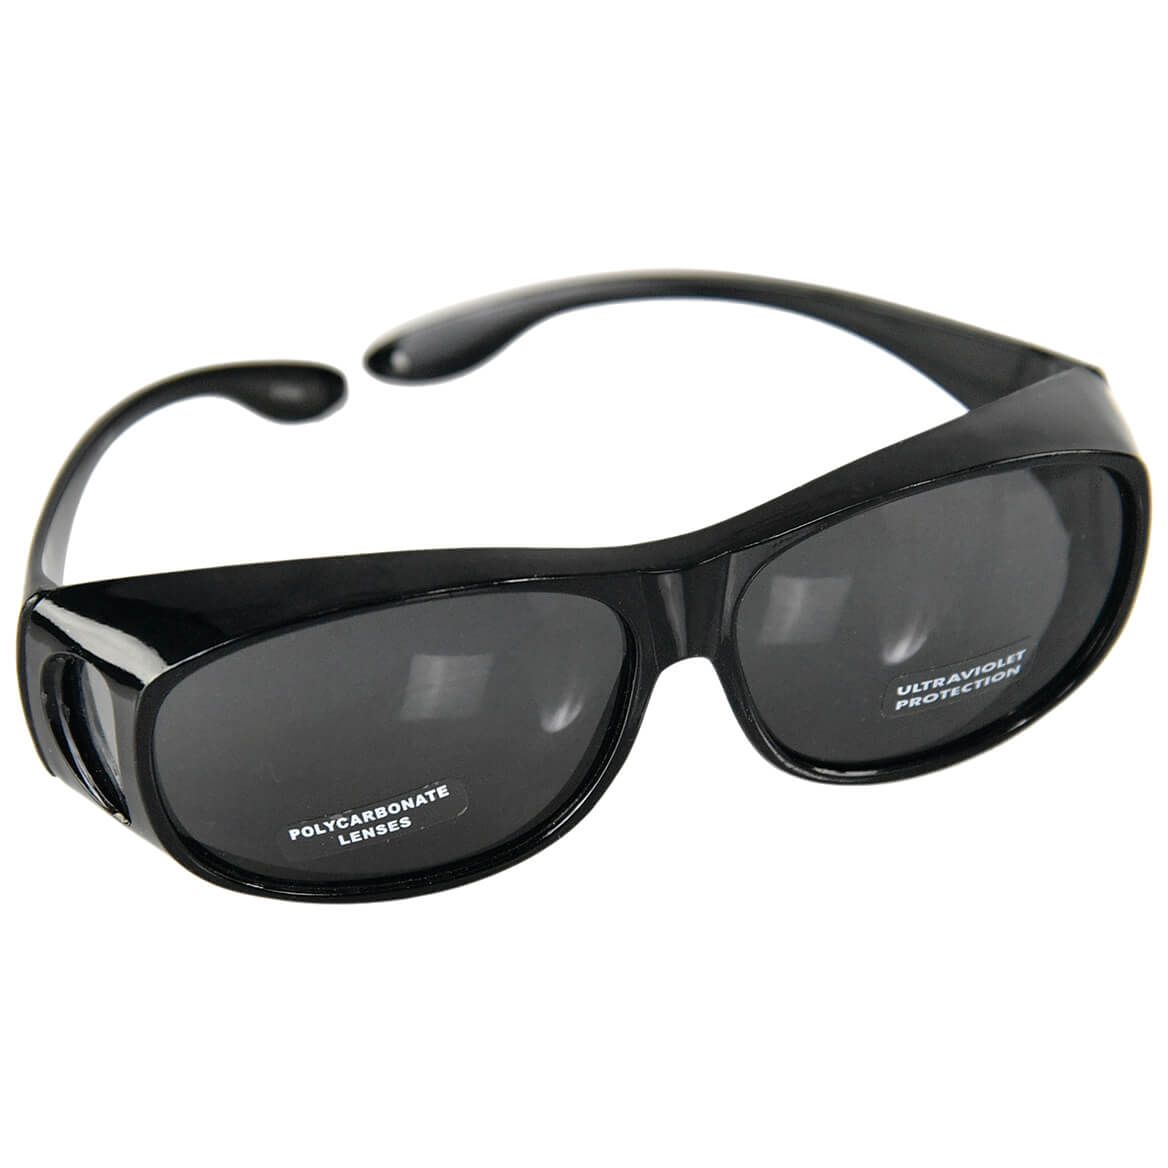 Cover All Sunglasses + '-' + 376352